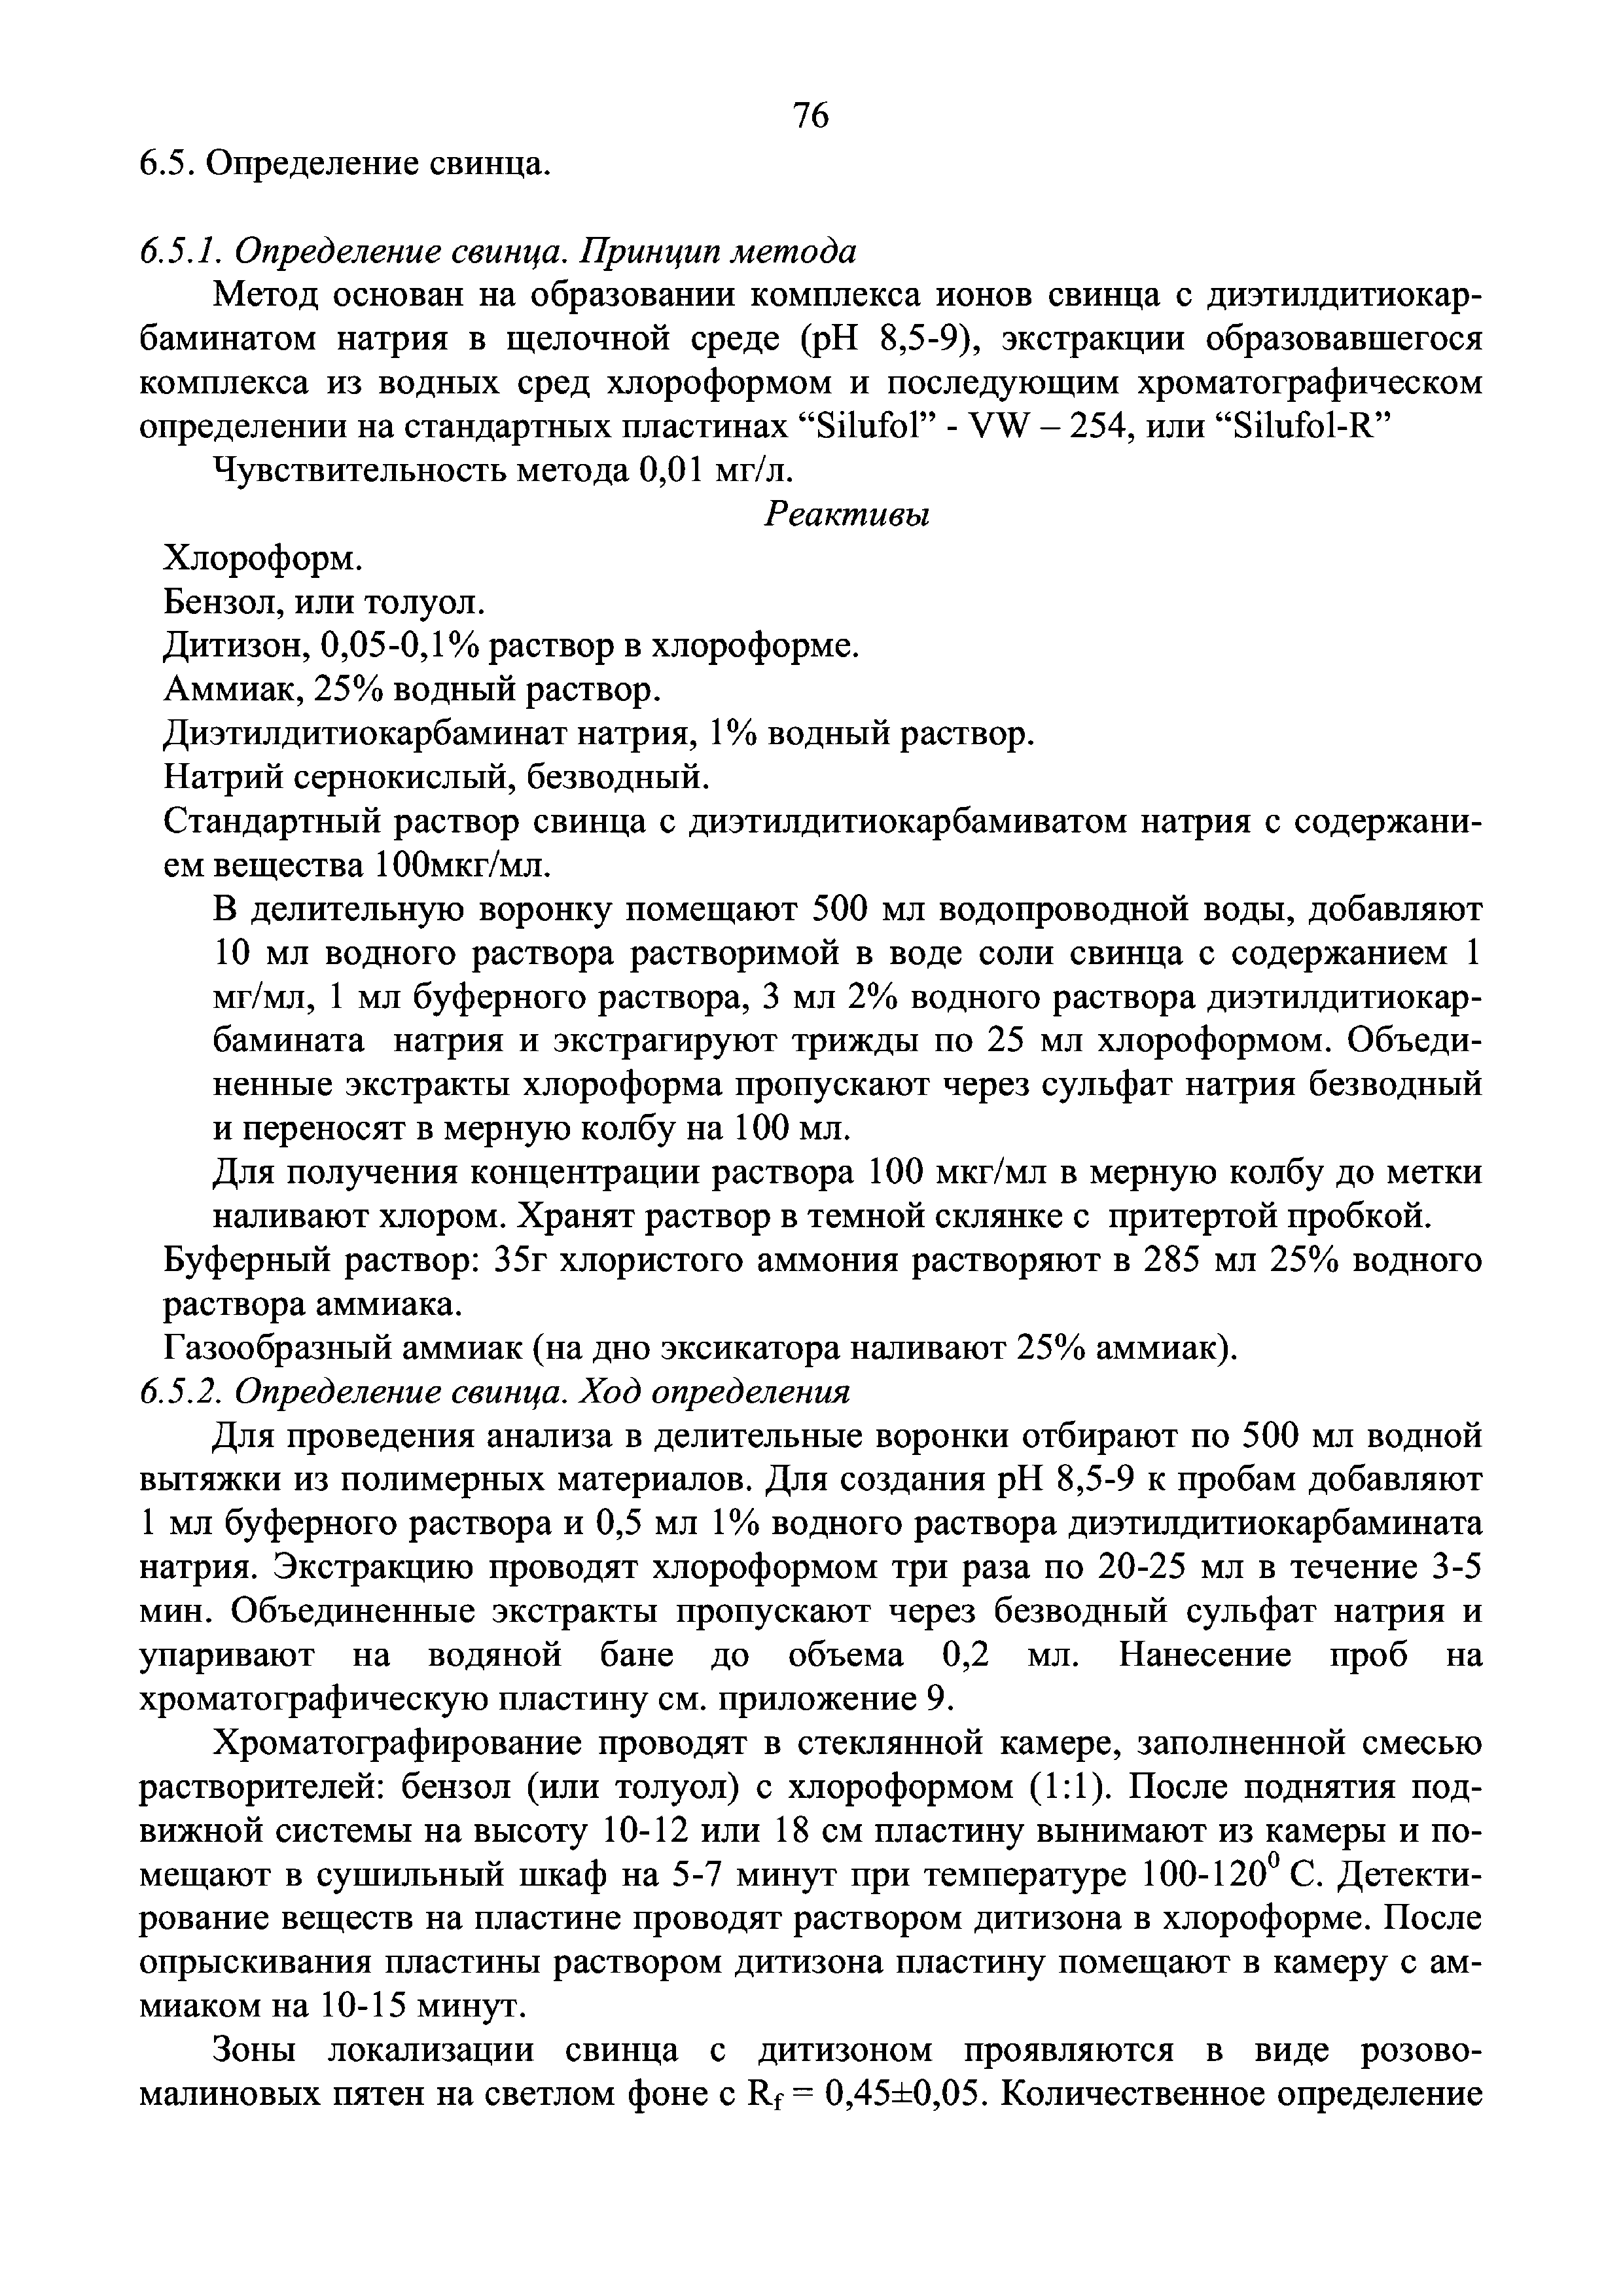 Инструкция 4.1.10-14-101-2005